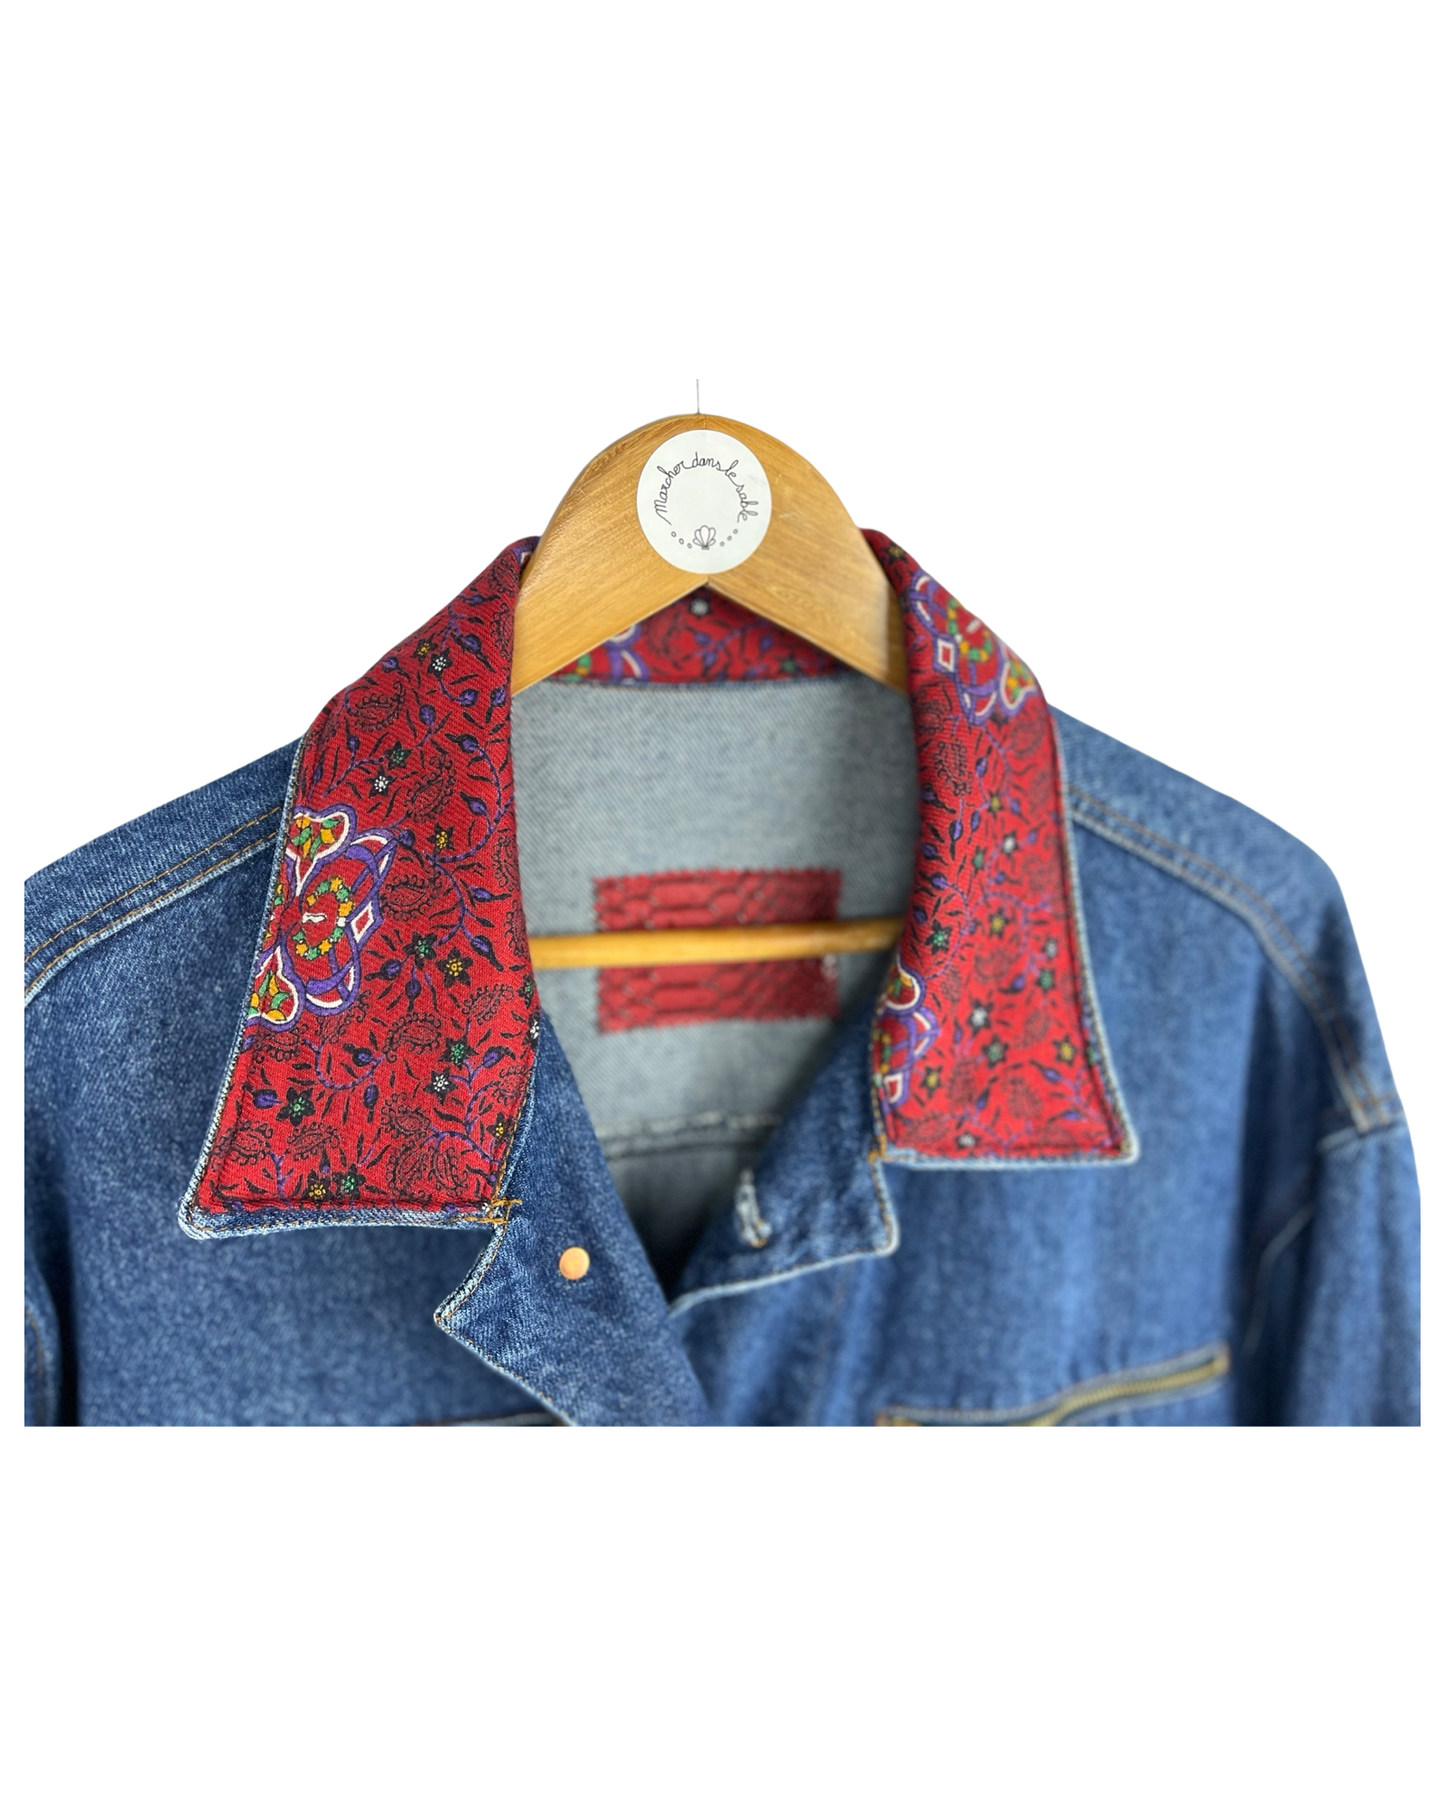 Vintage Indie Denim Jacket